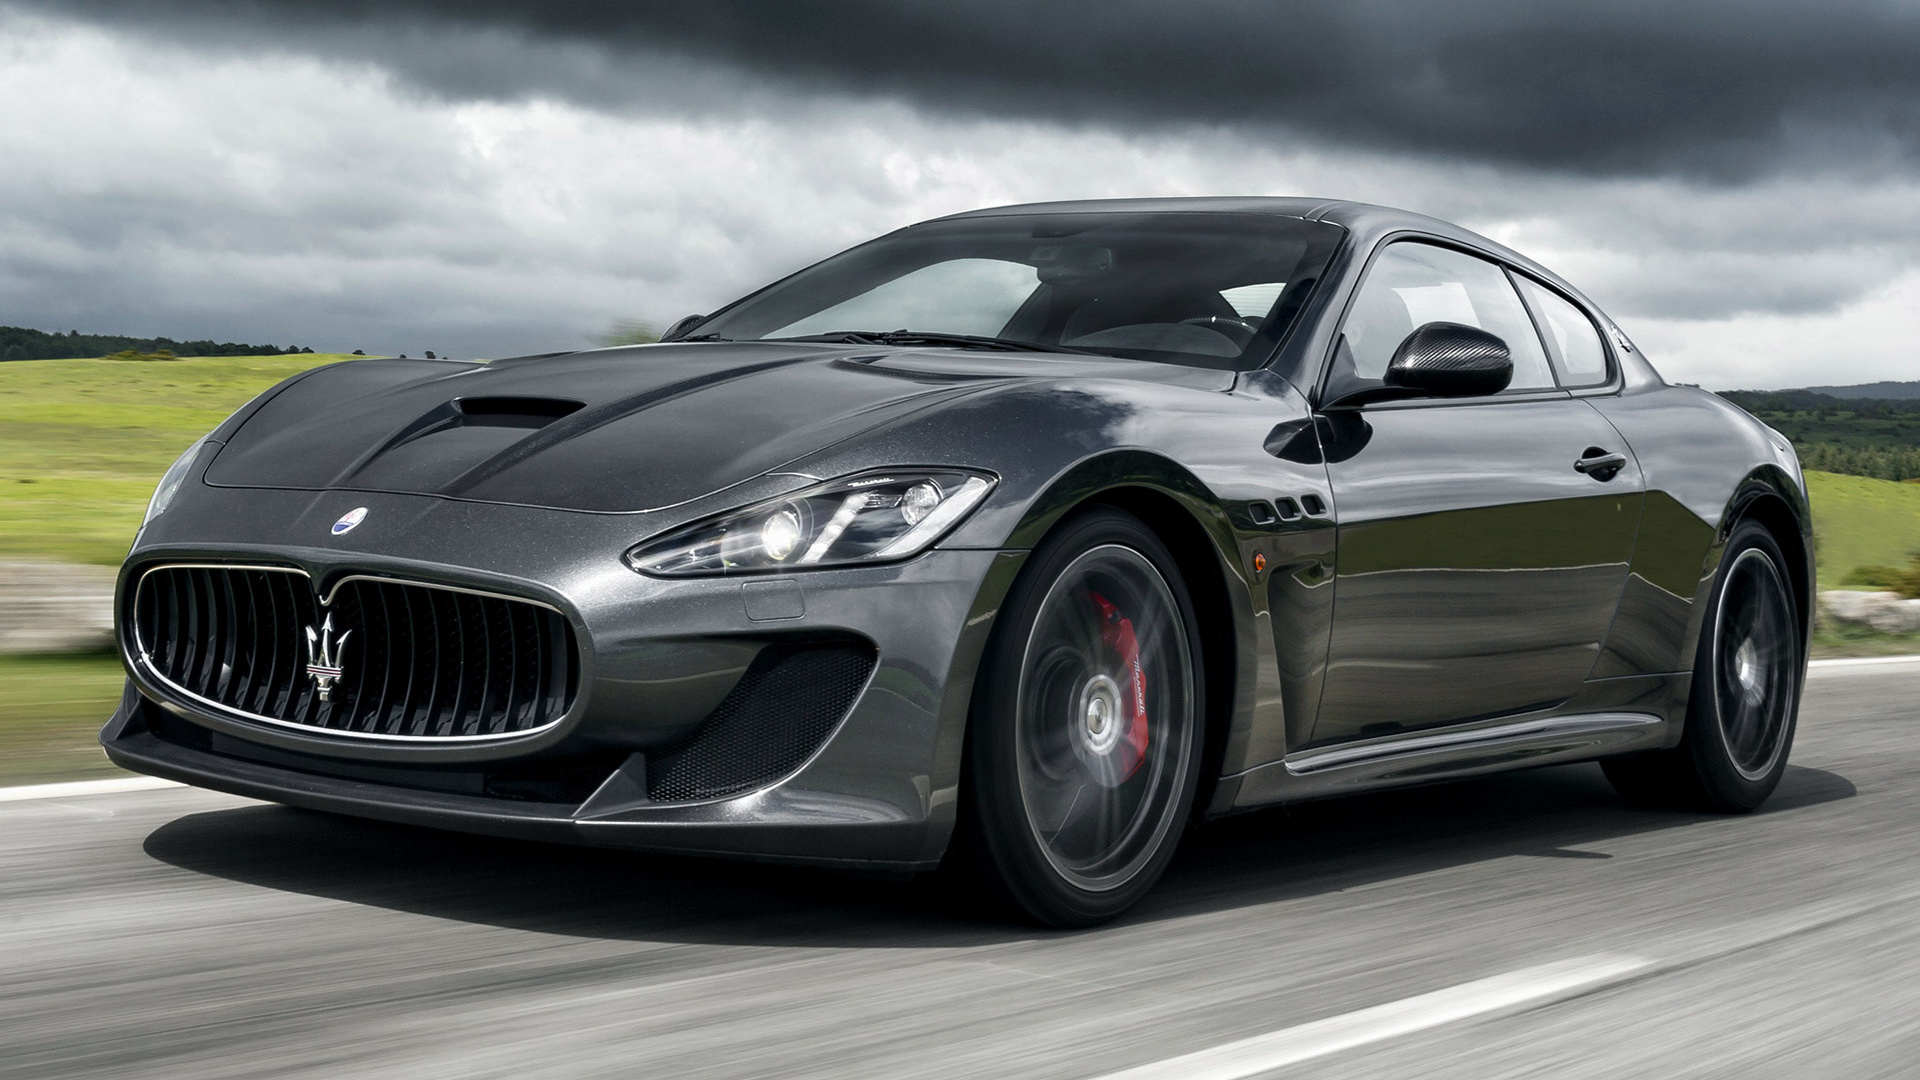 2013 Maserati GranTurismo MC Stradale - Wallpapers and HD Images | Car ...